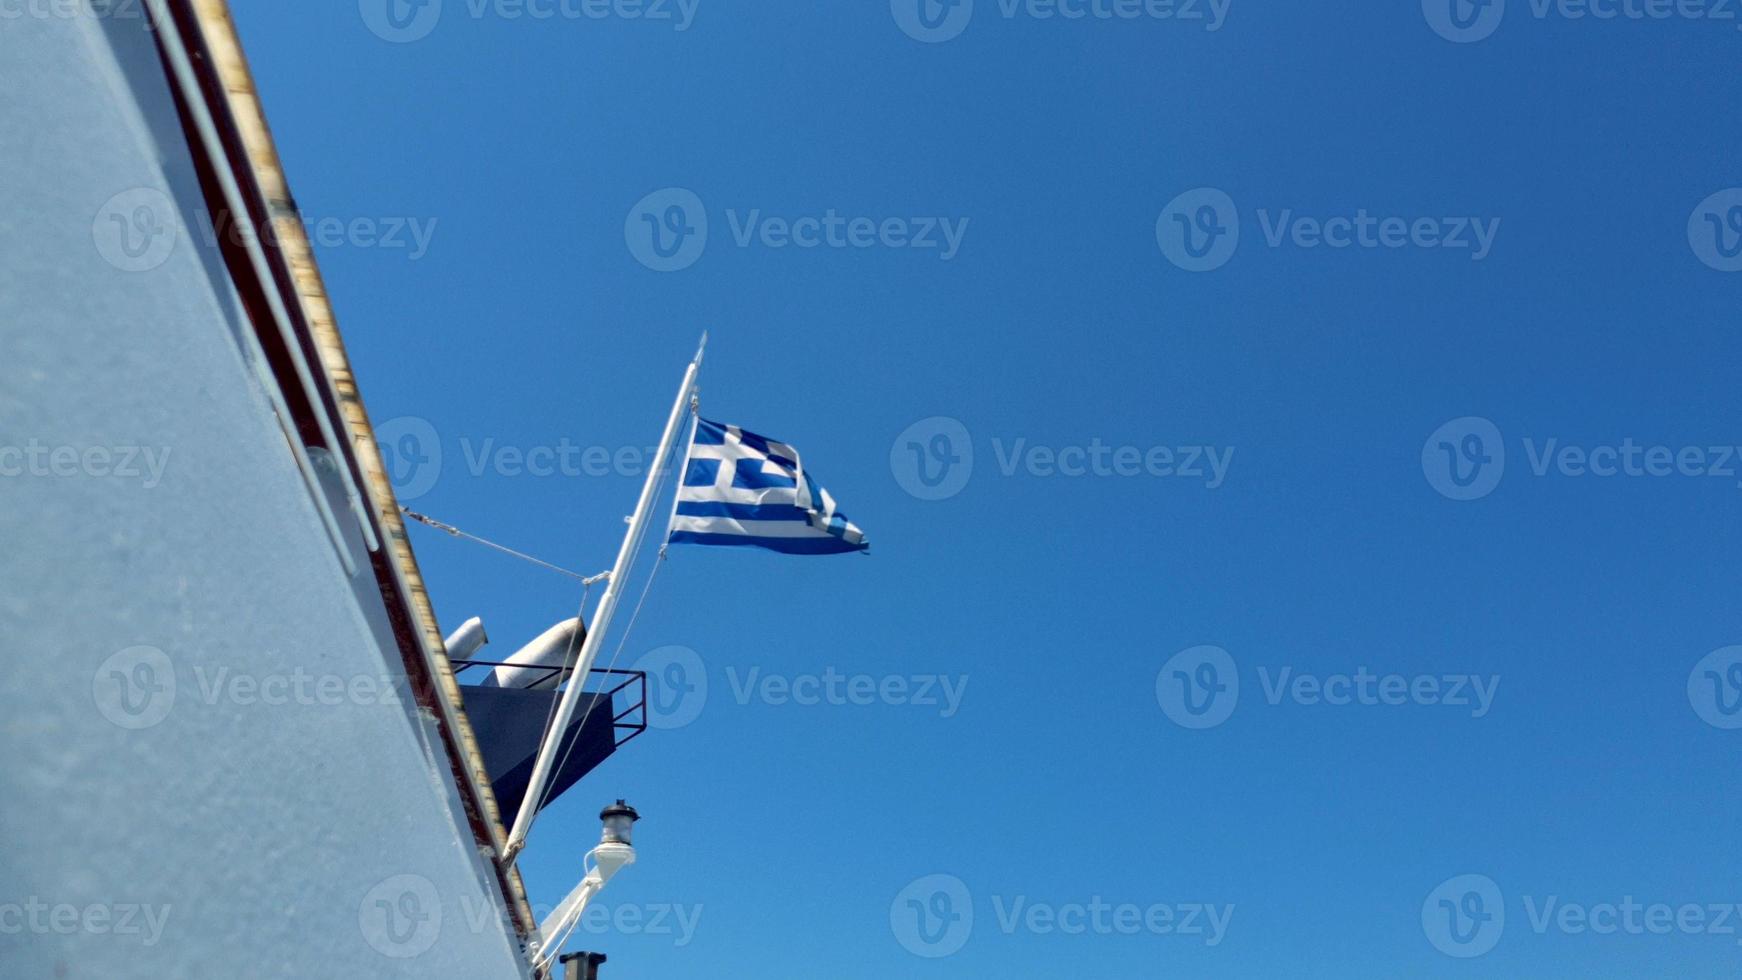 griekse vlag zwaaien in de achterkant van een veerboot in de egeïsche zee tegen een bewolkte hemel. foto